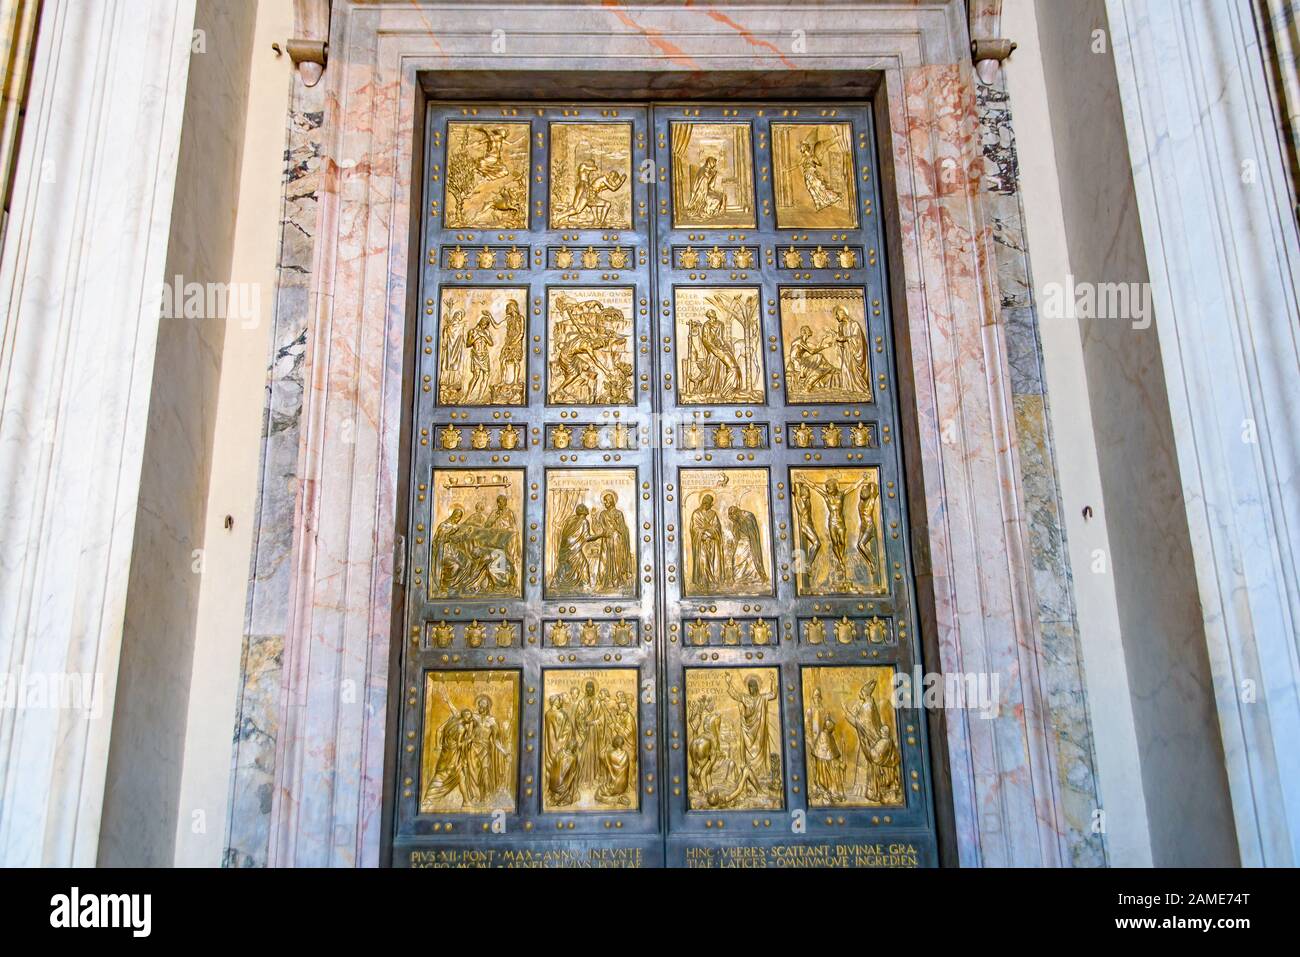 The Holy Door of St. Peter's Basilica in Vatican City Stock Photo